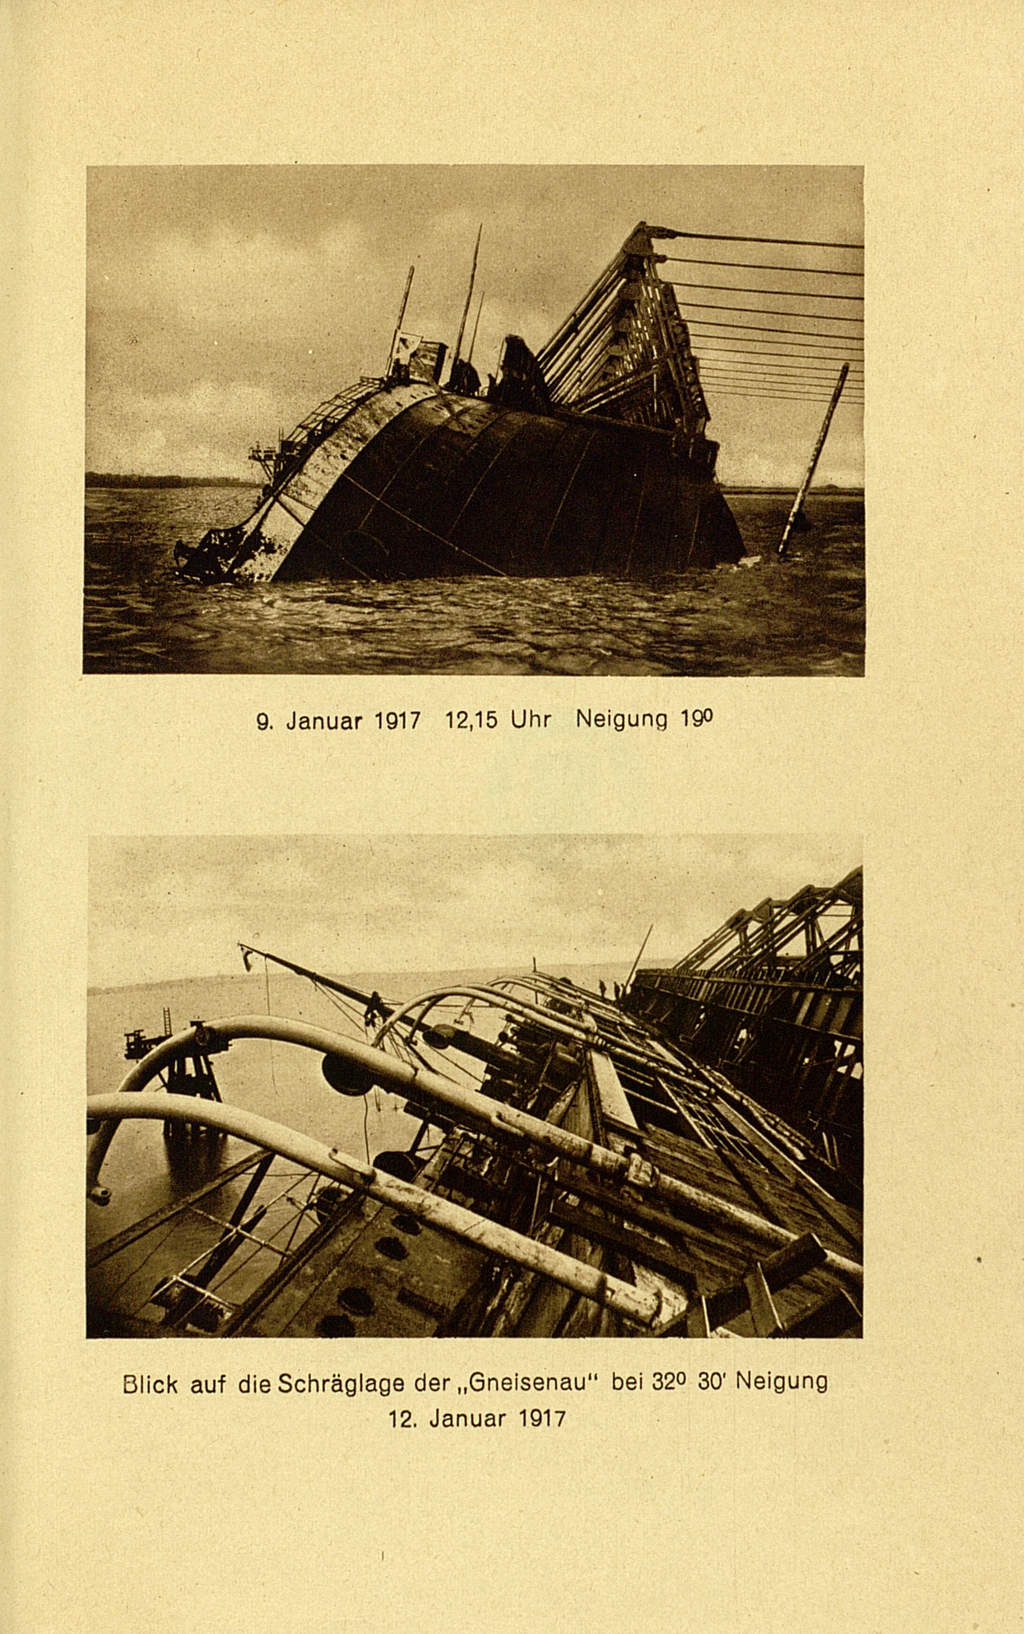 Die Abbildung beinhaltet zwei Fotografien der untergehenden Gneisenau. Sie hat starke Schlagseite und ist schon größtenteils in den Fluten versunken. Dann scheint der Untergang allerdings gestoppt worden zu sein, denn das erste Foto ist auf den 9. Januar 1917, das zweite hingegen auf den 12. Januar datiert. 